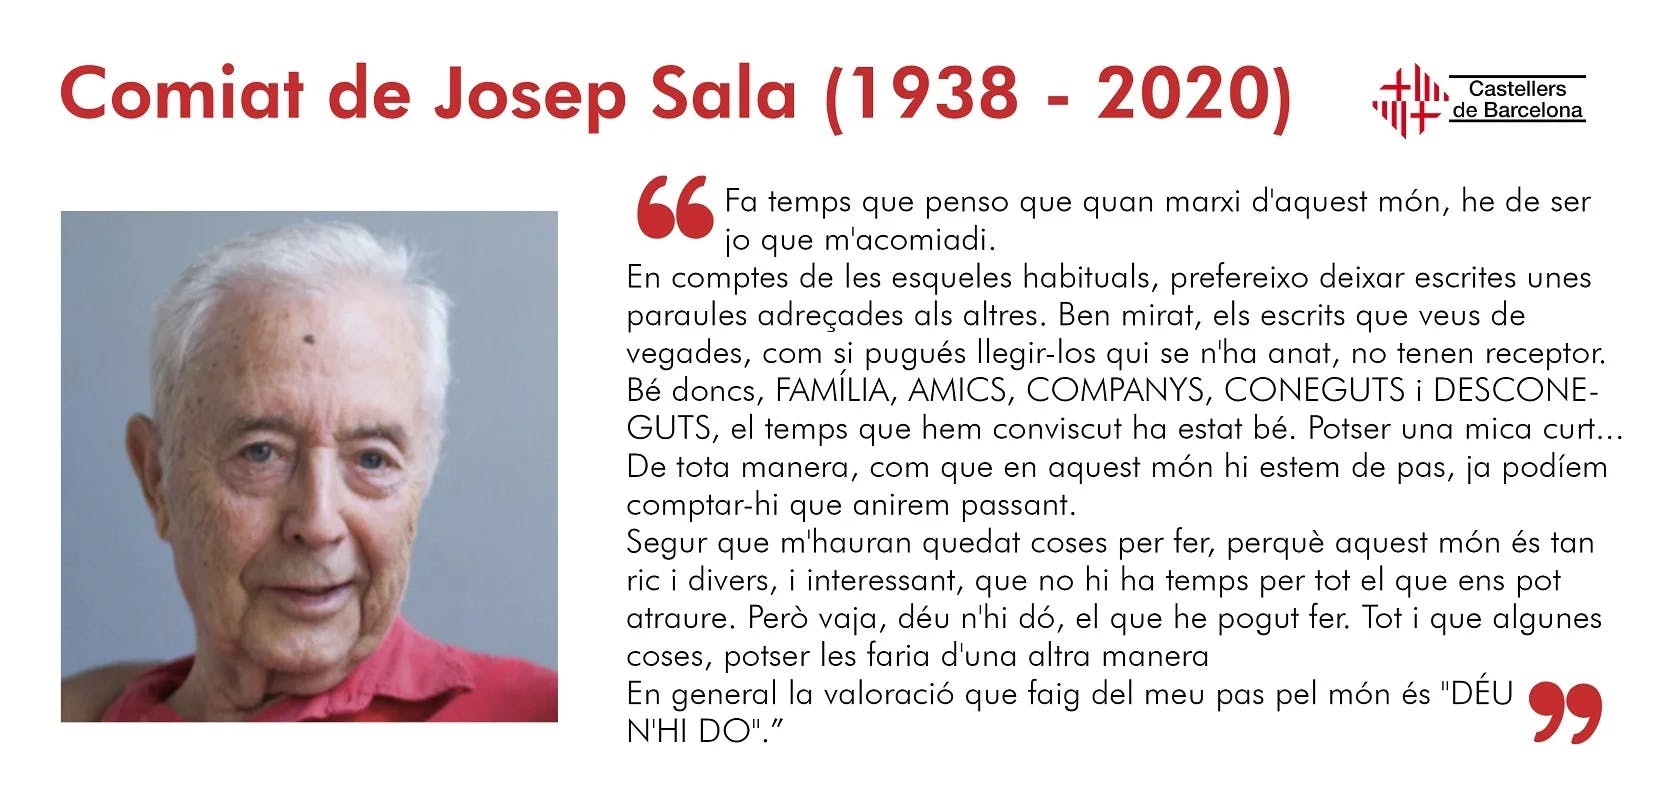 Comiat de Josep Sala